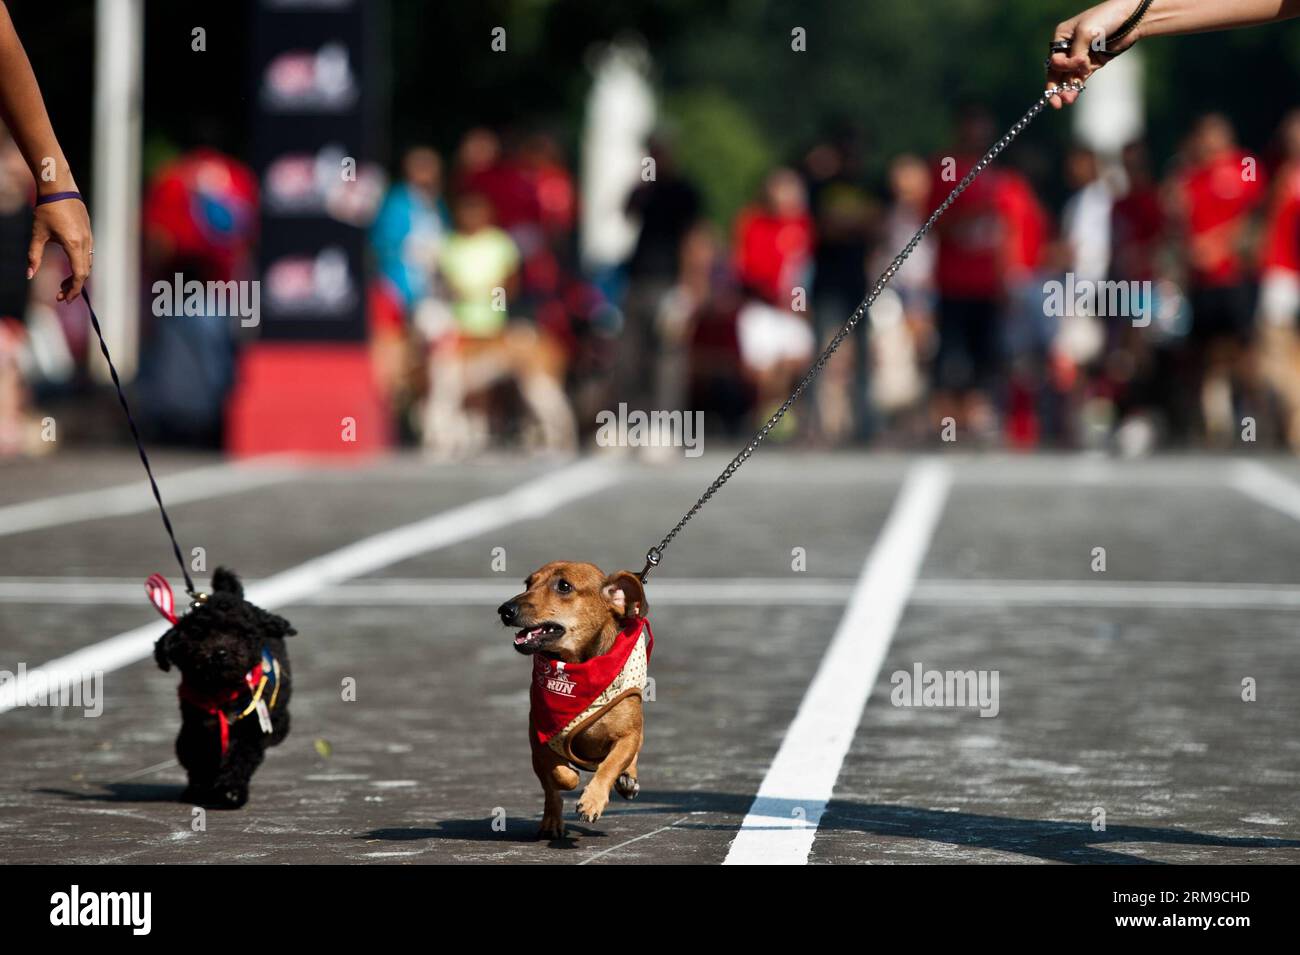 Hunde rennen in der Sprint-Kategorie beim Dog Run in Jakarta, Indonesien, 18. Mai 2014. Der Dog Run ist ein Rennen für Besitzer und ihre Hunde. (Xinhua/Veri Sanovri) INDONESIEN-JAKARTA-HUNDESPORT PUBLICATIONxNOTxINxCHN HUNDESCHLITTENRENNEN in der Sprint-Kategorie während des Hundeschlittenlaufs in Jakarta, Indonesien, 18. Mai 2014 das Hundeschlittenrennen IST ein Rennen für Besitzer und ihre Hunde XINHUA Veri Indonesia Jakarta Hundeslauf PUBLICATIONxNOTxINxCHN Stockfoto